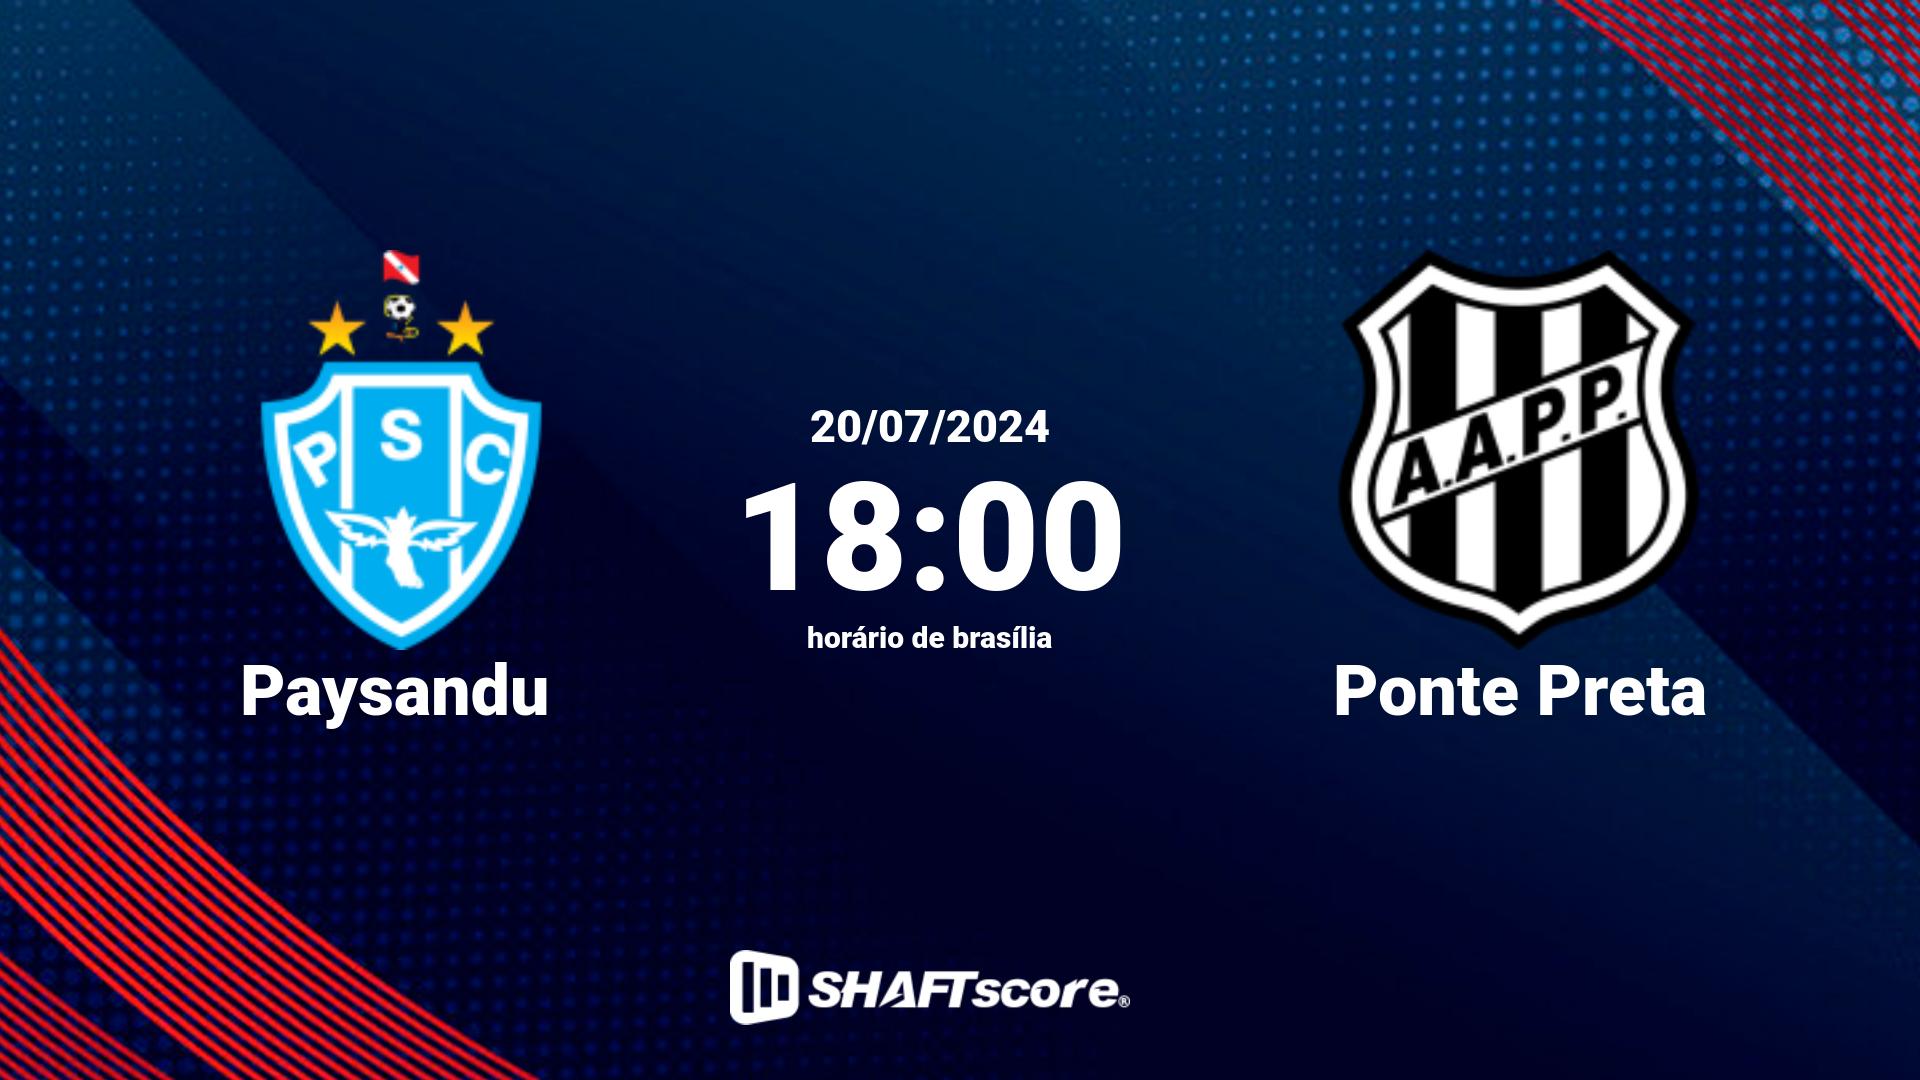 Estatísticas do jogo Paysandu vs Ponte Preta 20.07 18:00